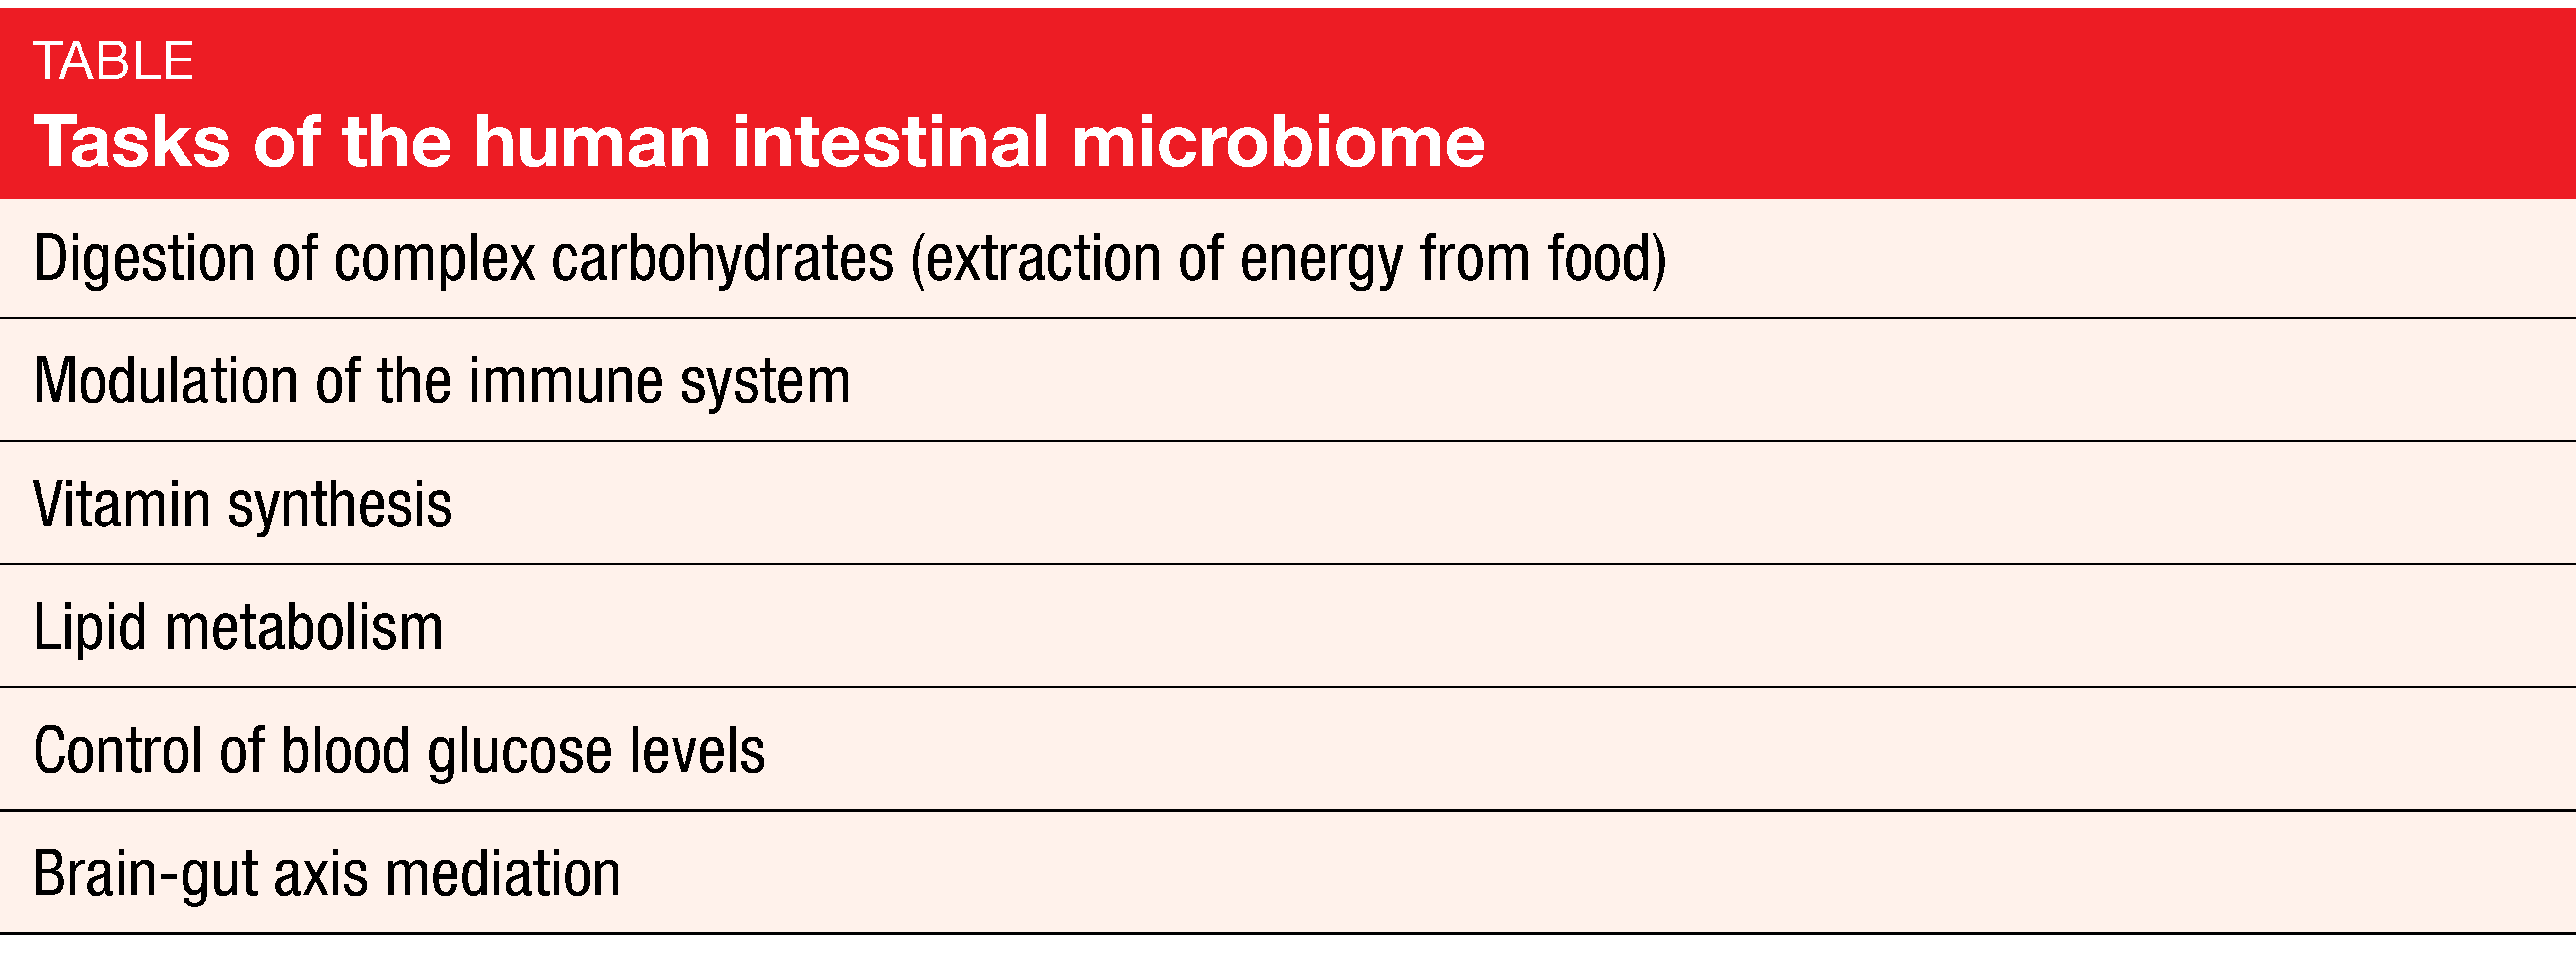 Task of the human intestinal microbiome